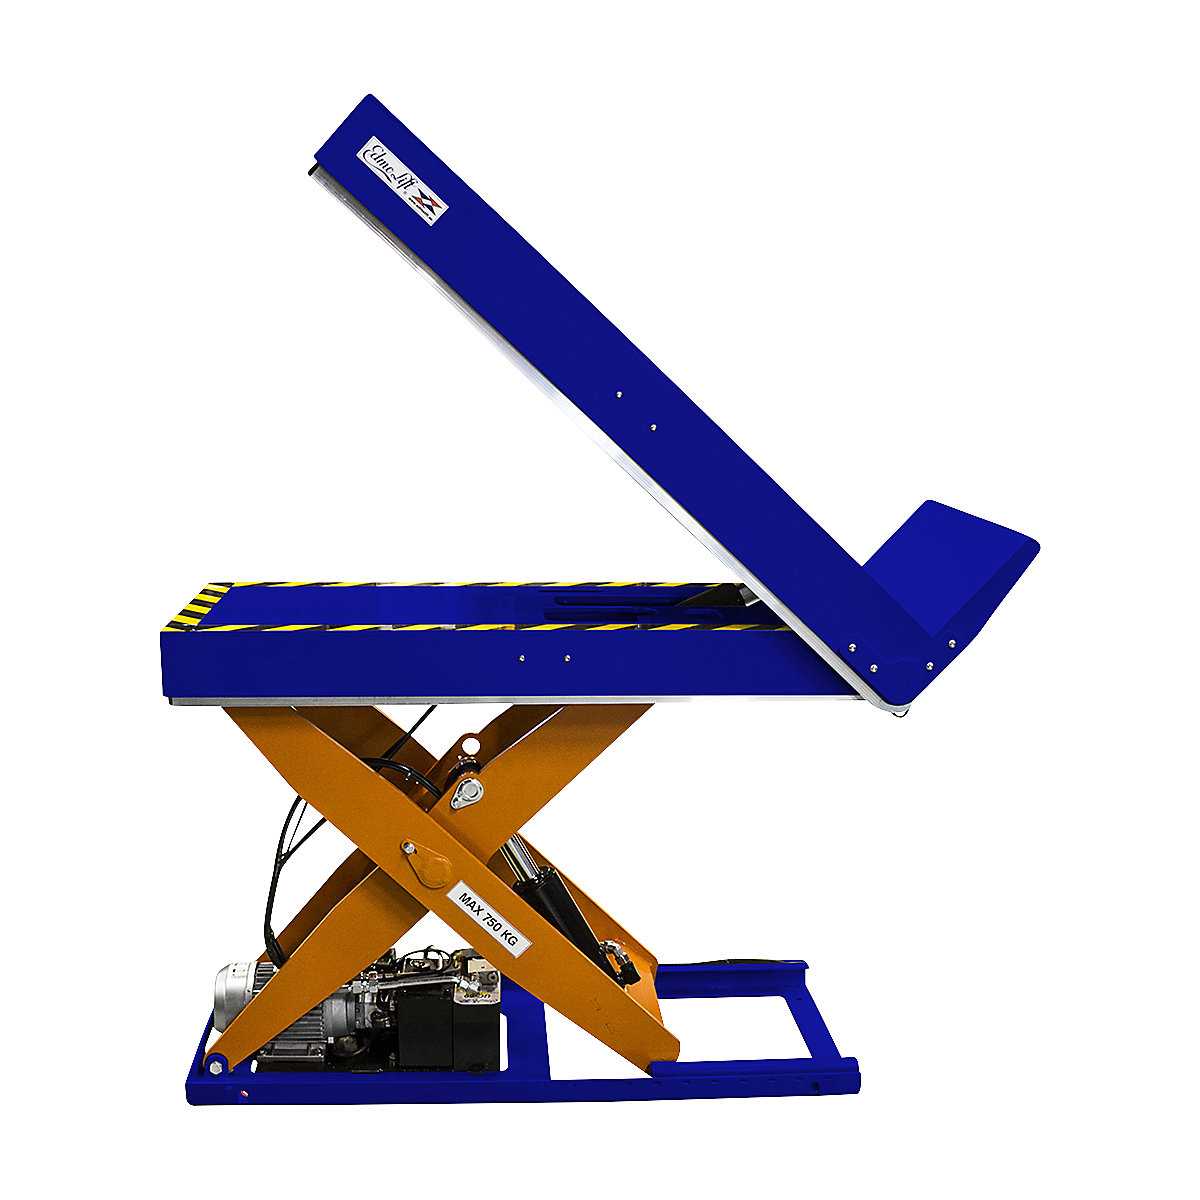 Edmolift – LTT 750 lift and tilt table, platform LxW 1200 x 550 mm, max. load 750 kg